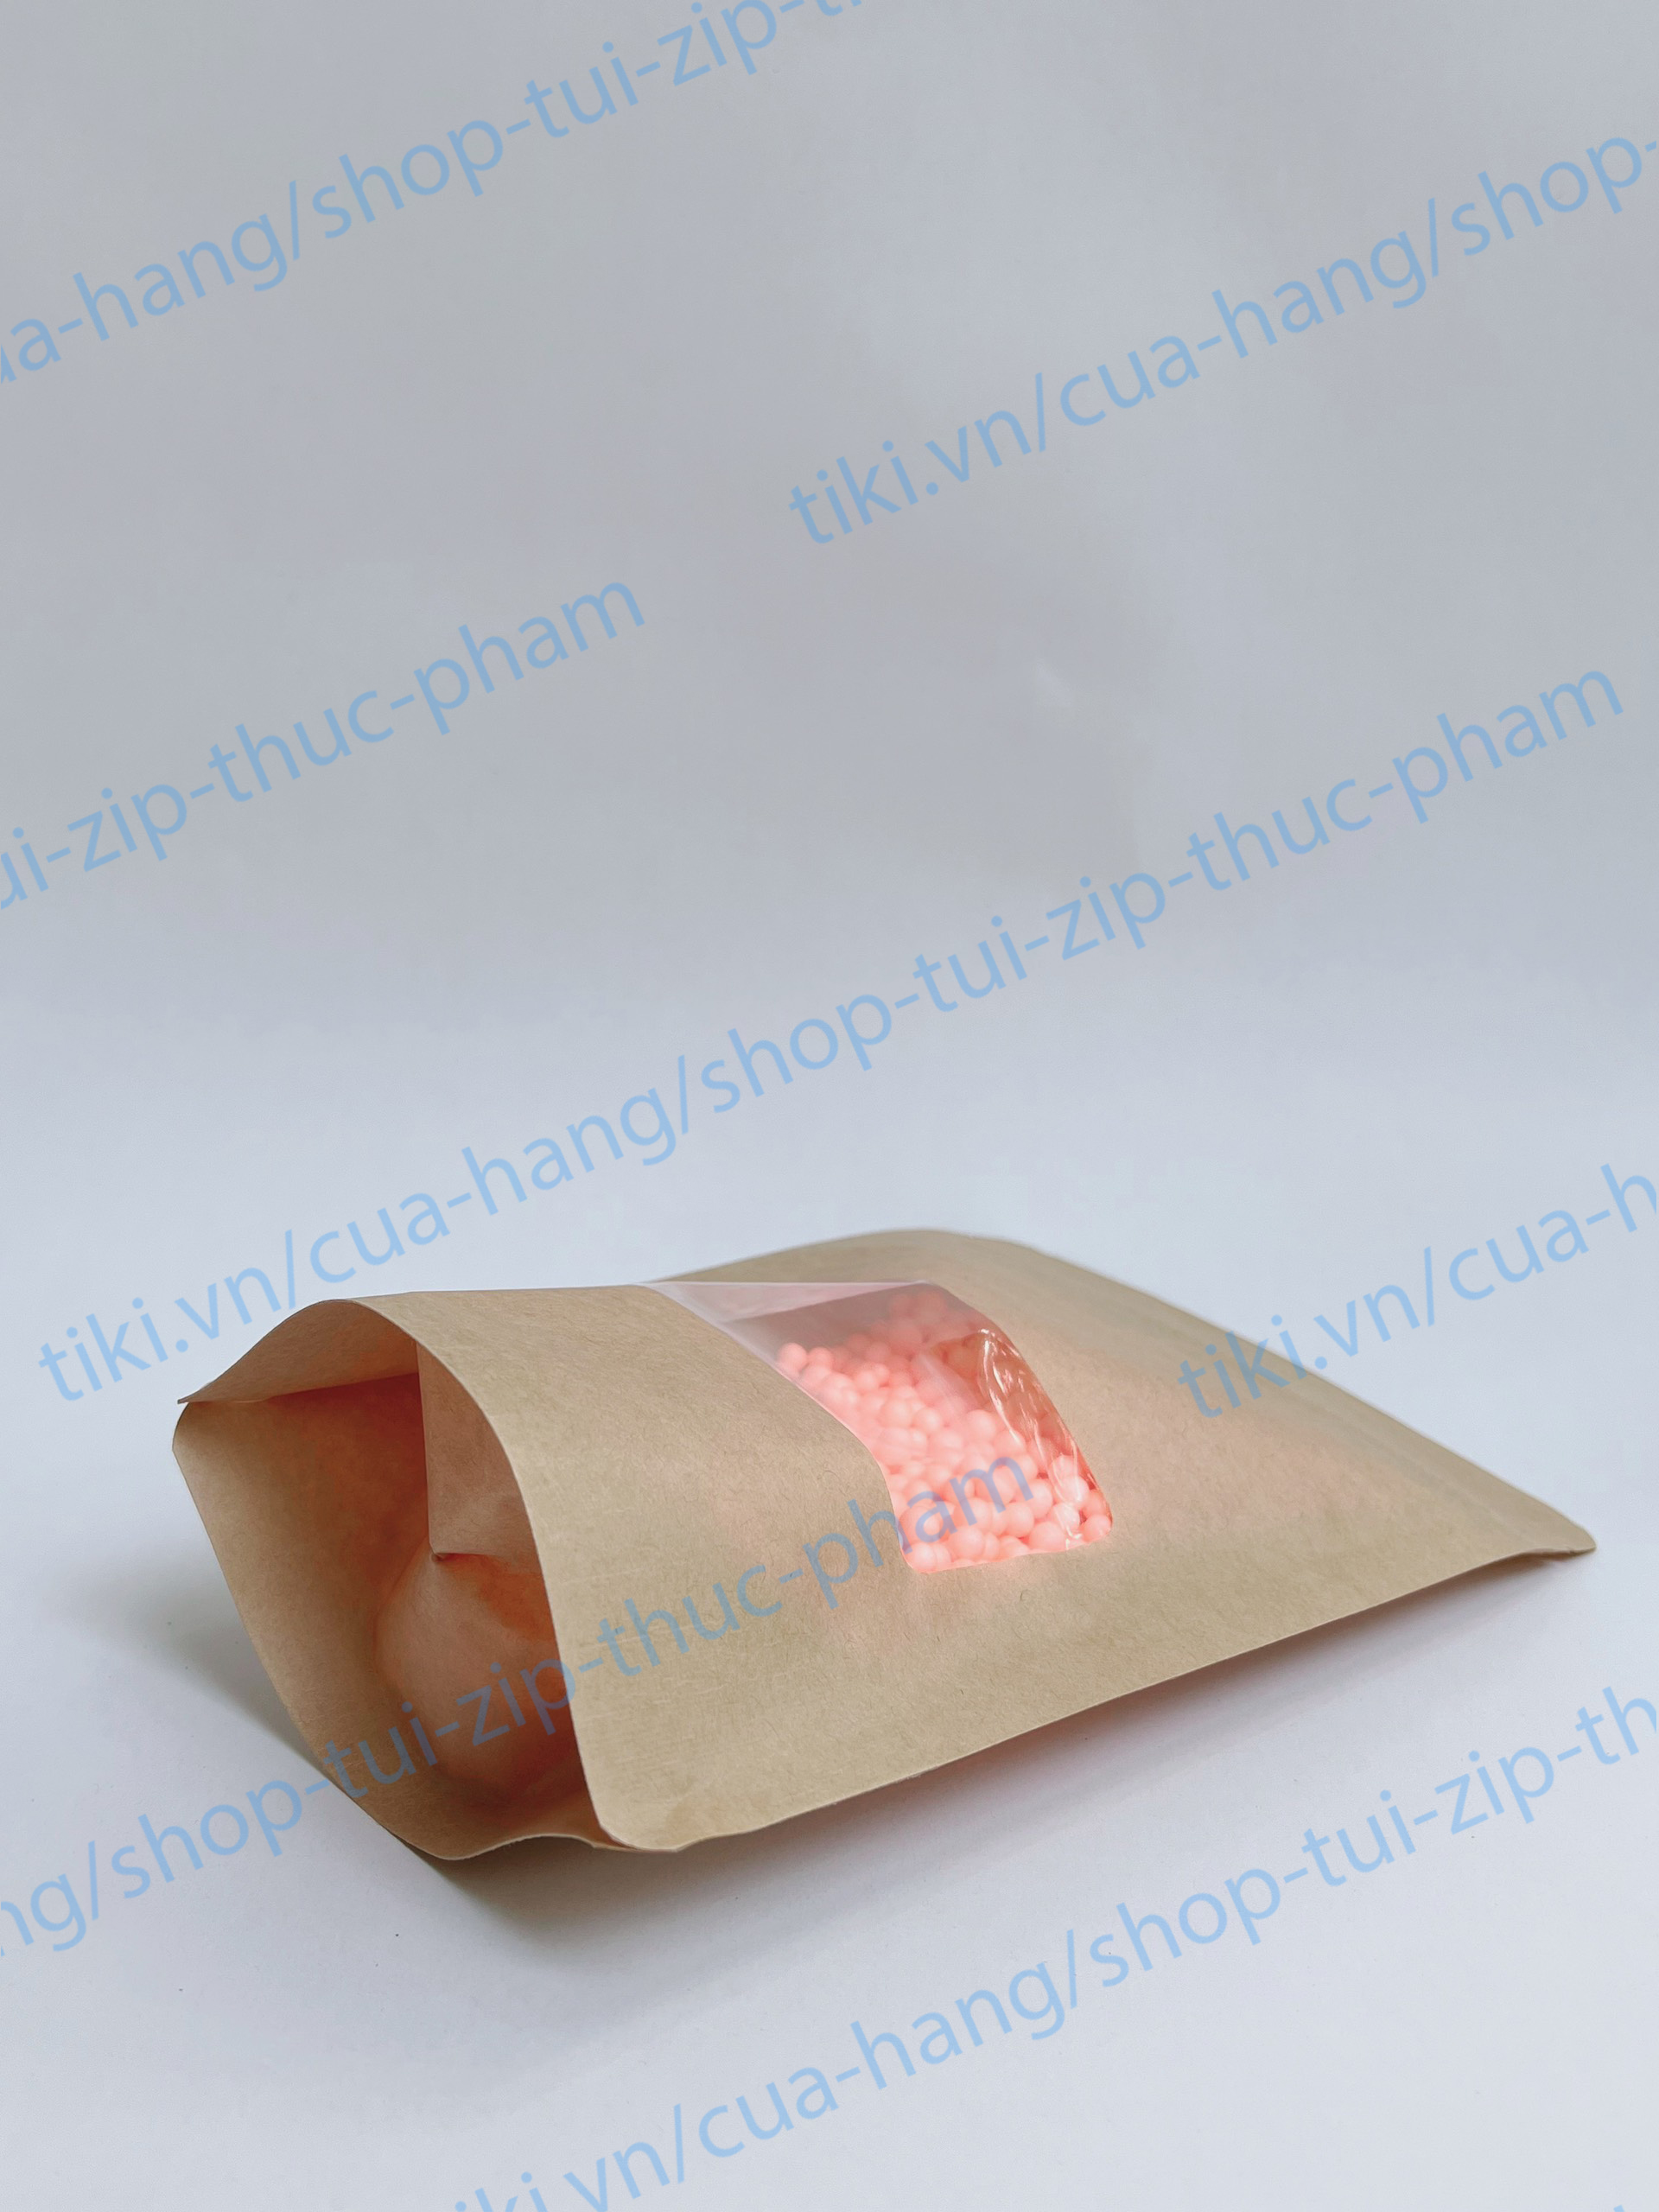 1KG Túi giấy cửa sổ đáy đứng - túi giấy đựng thực phẩm (zip, zipper, ziplock) - Túi zip đựng bánh kẹo - size